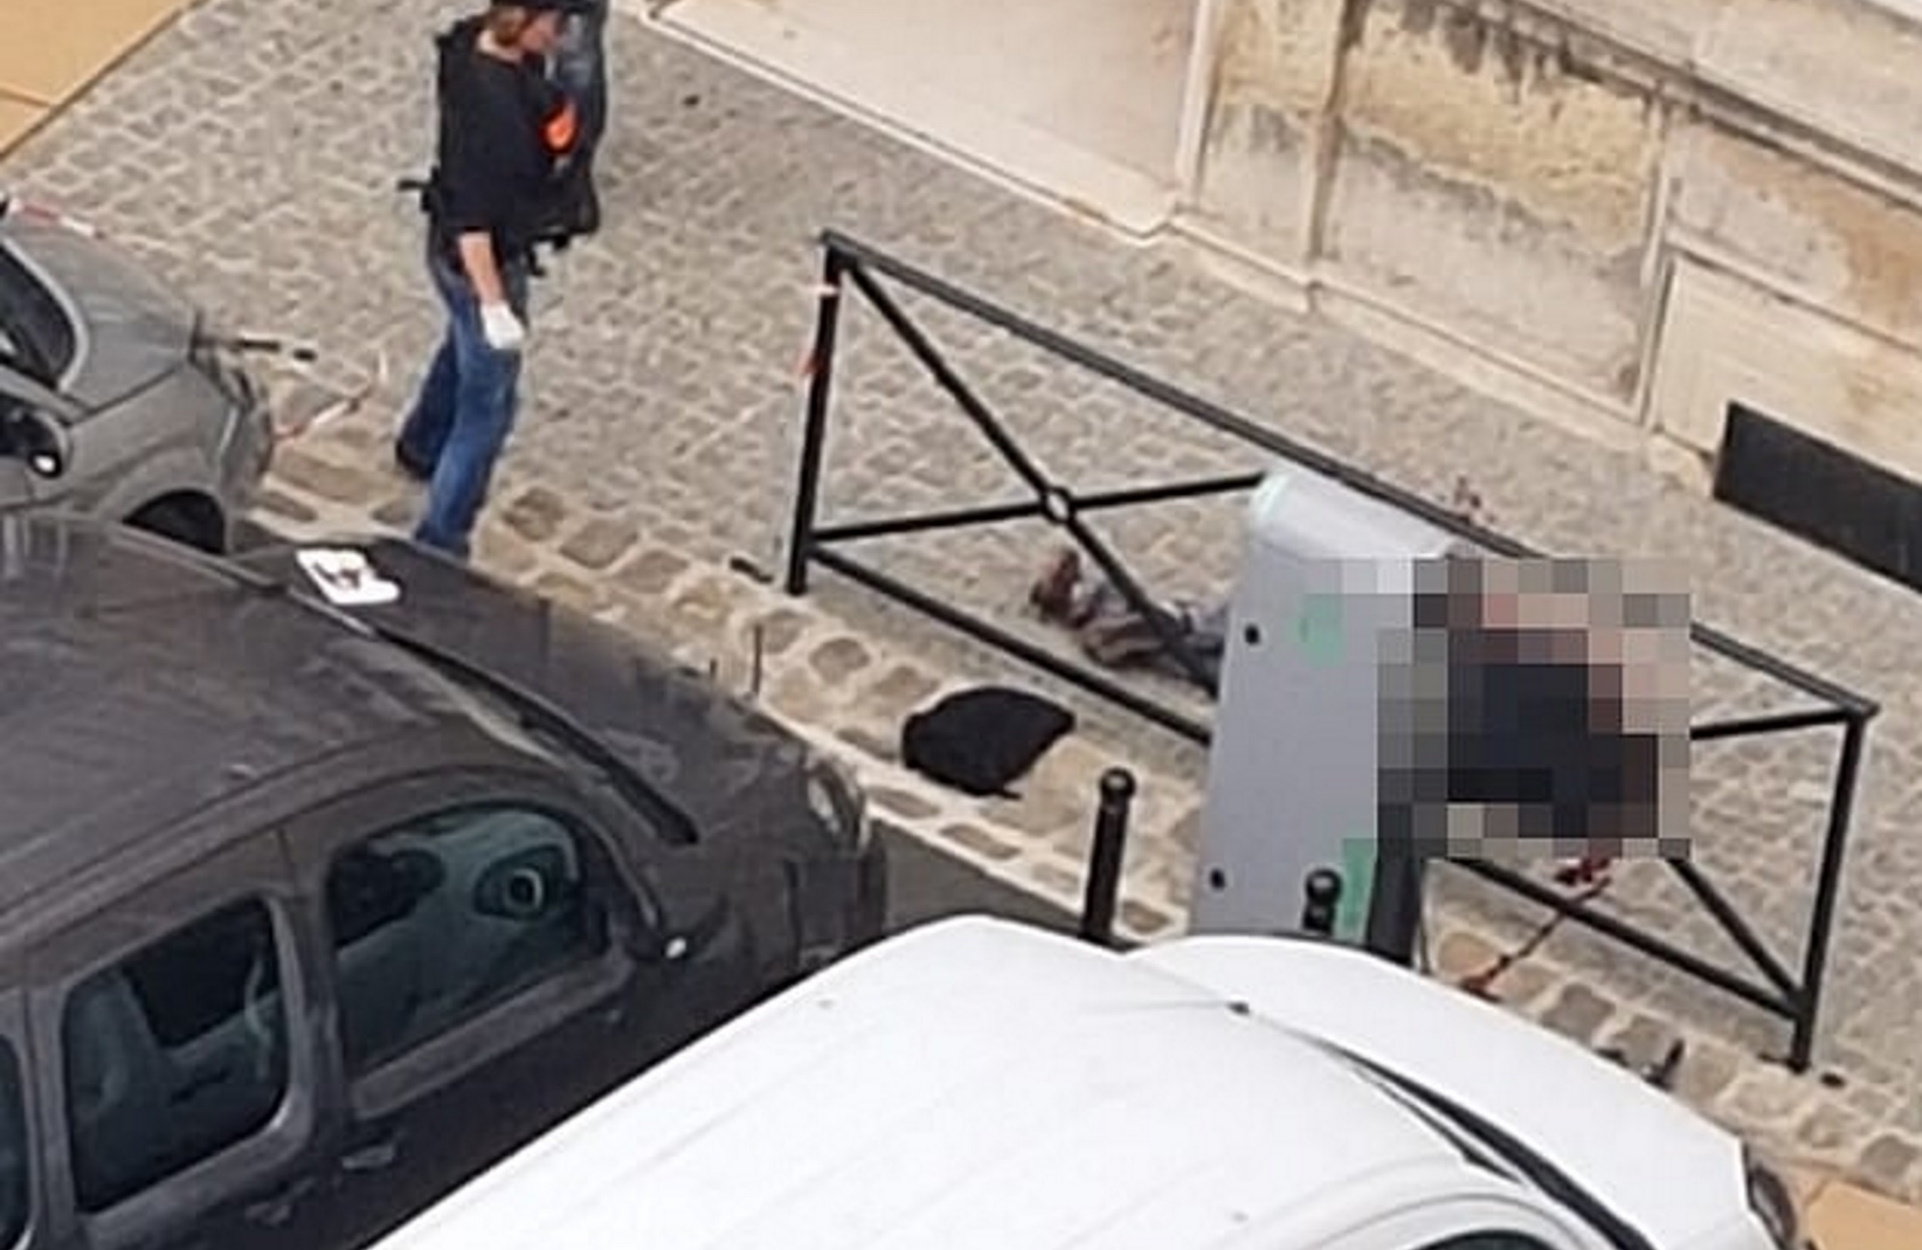 Παρίσι: Εικόνα – σοκ με τον δράστη νεκρό! Πρόσφατα είχε ασπαστεί το Ισλάμ!